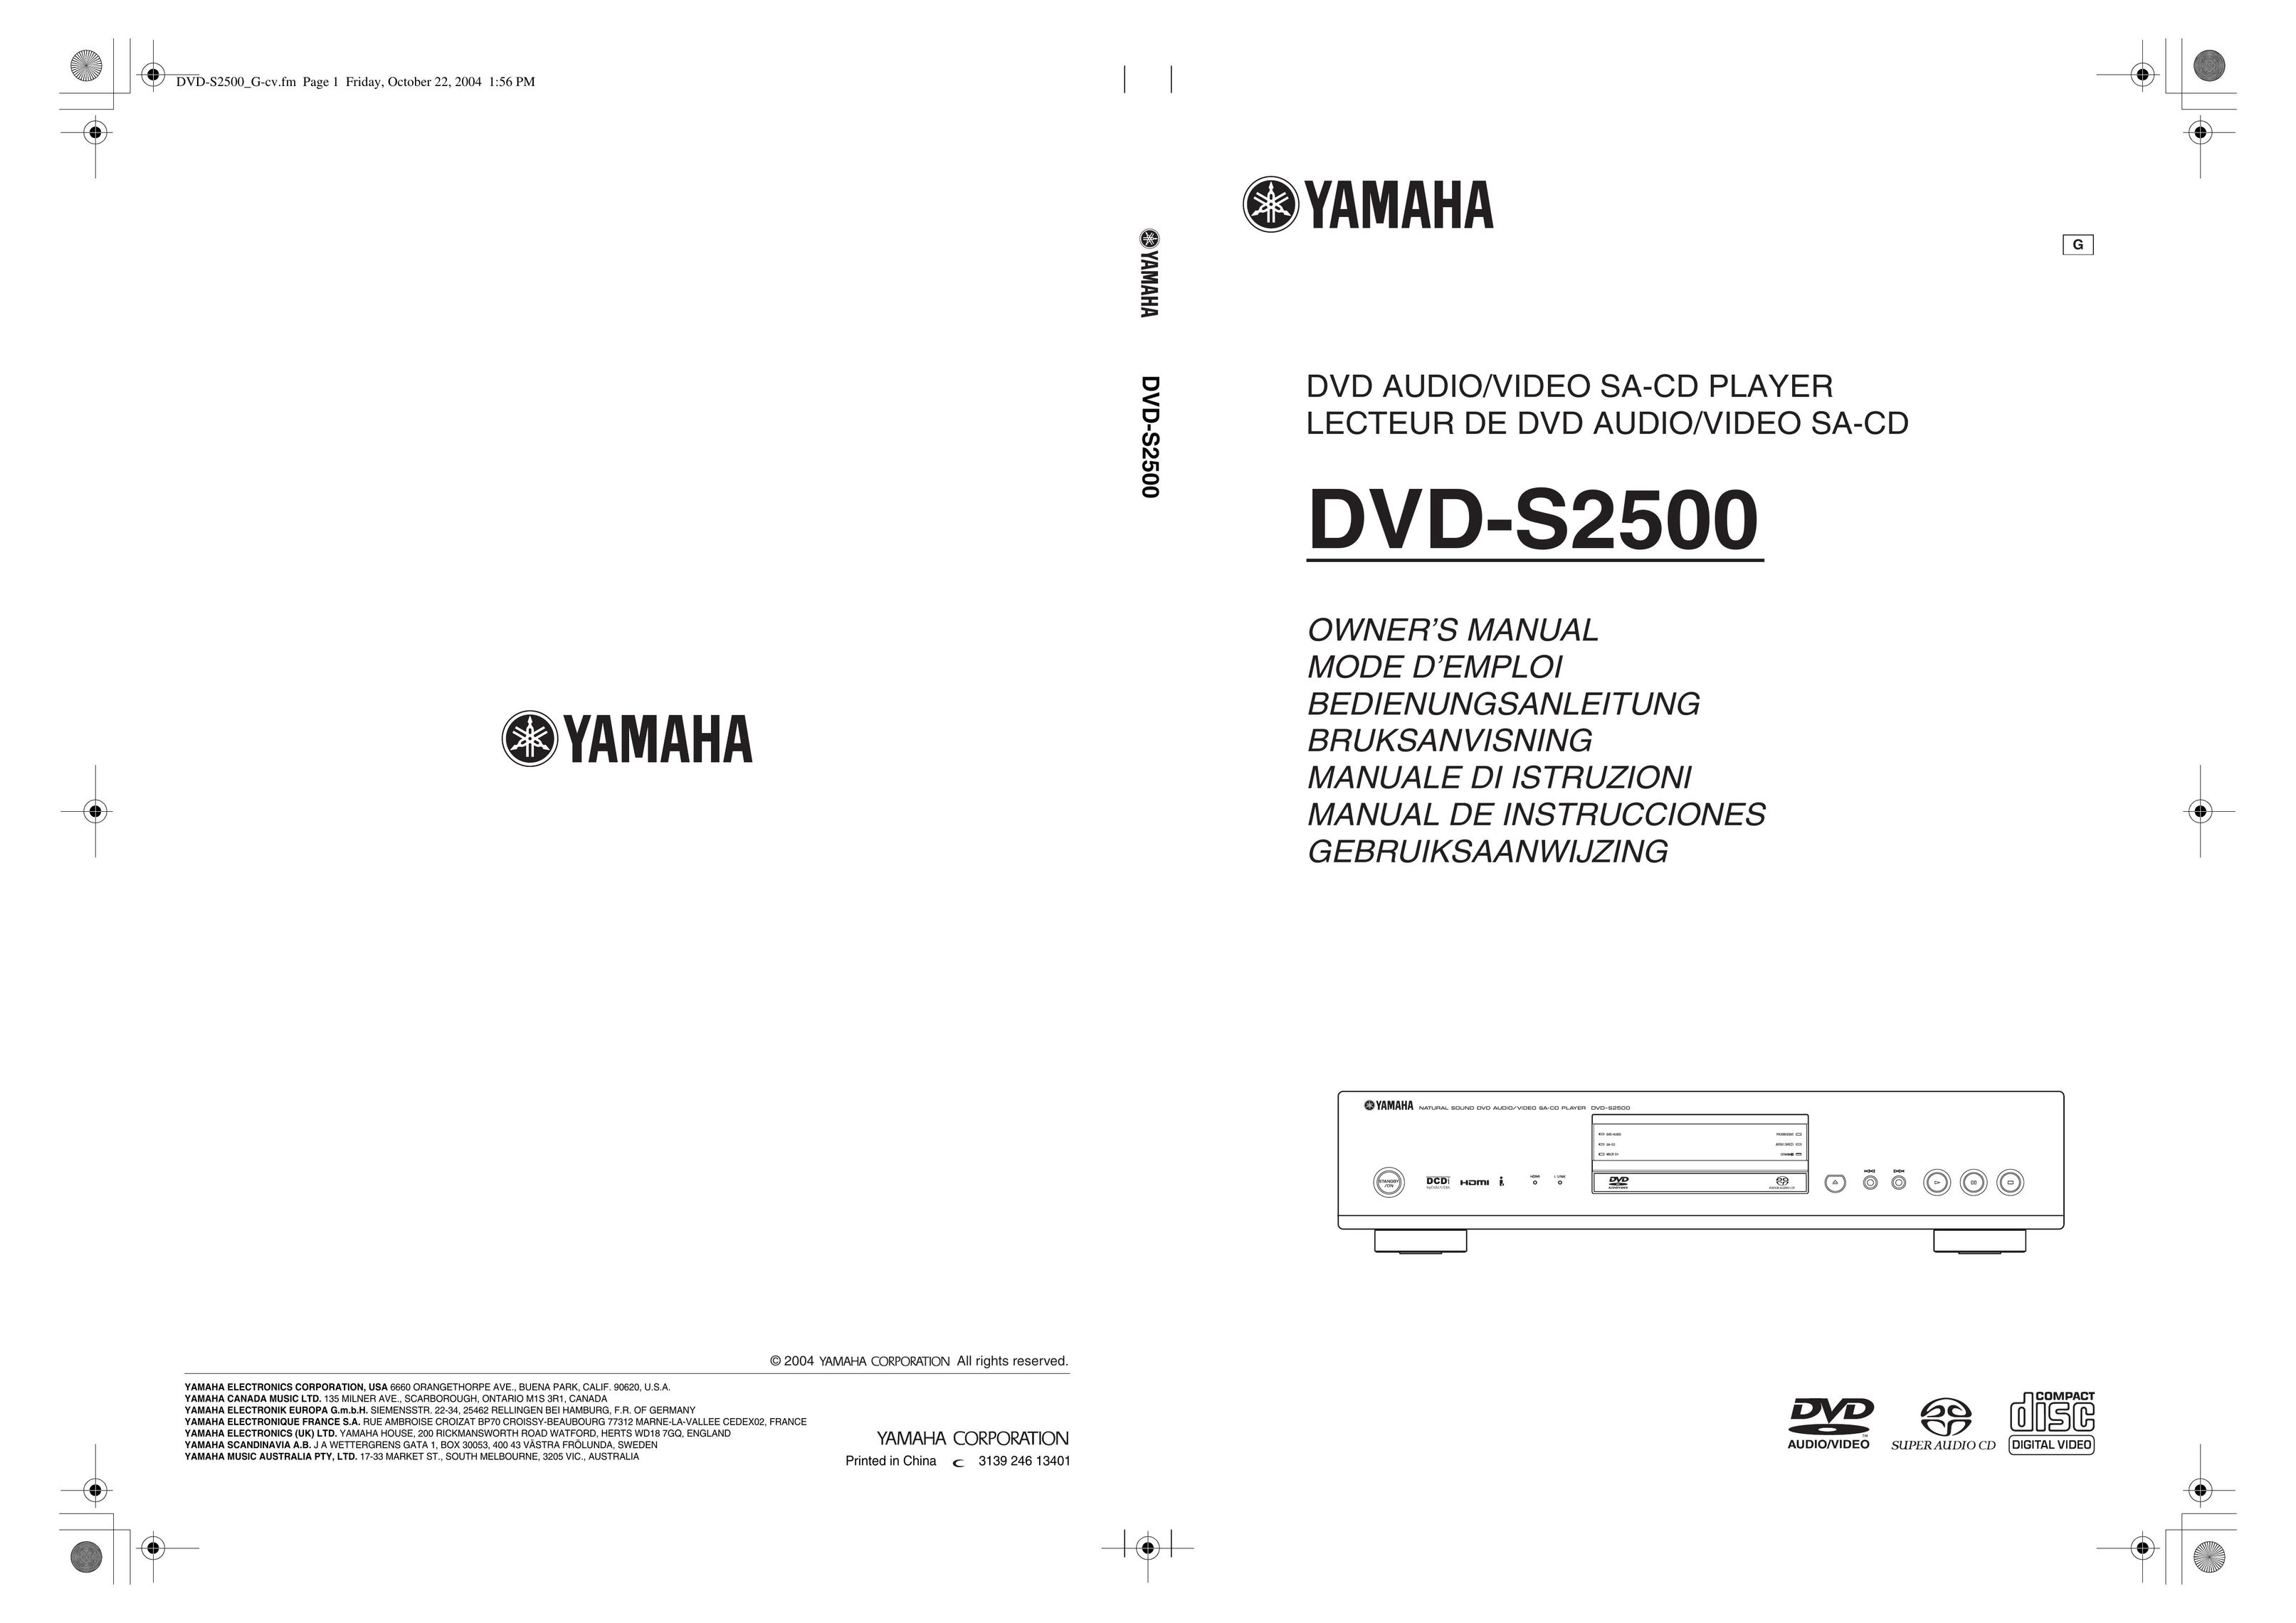 Yamaha DVD-S2500 DVD Player User Manual